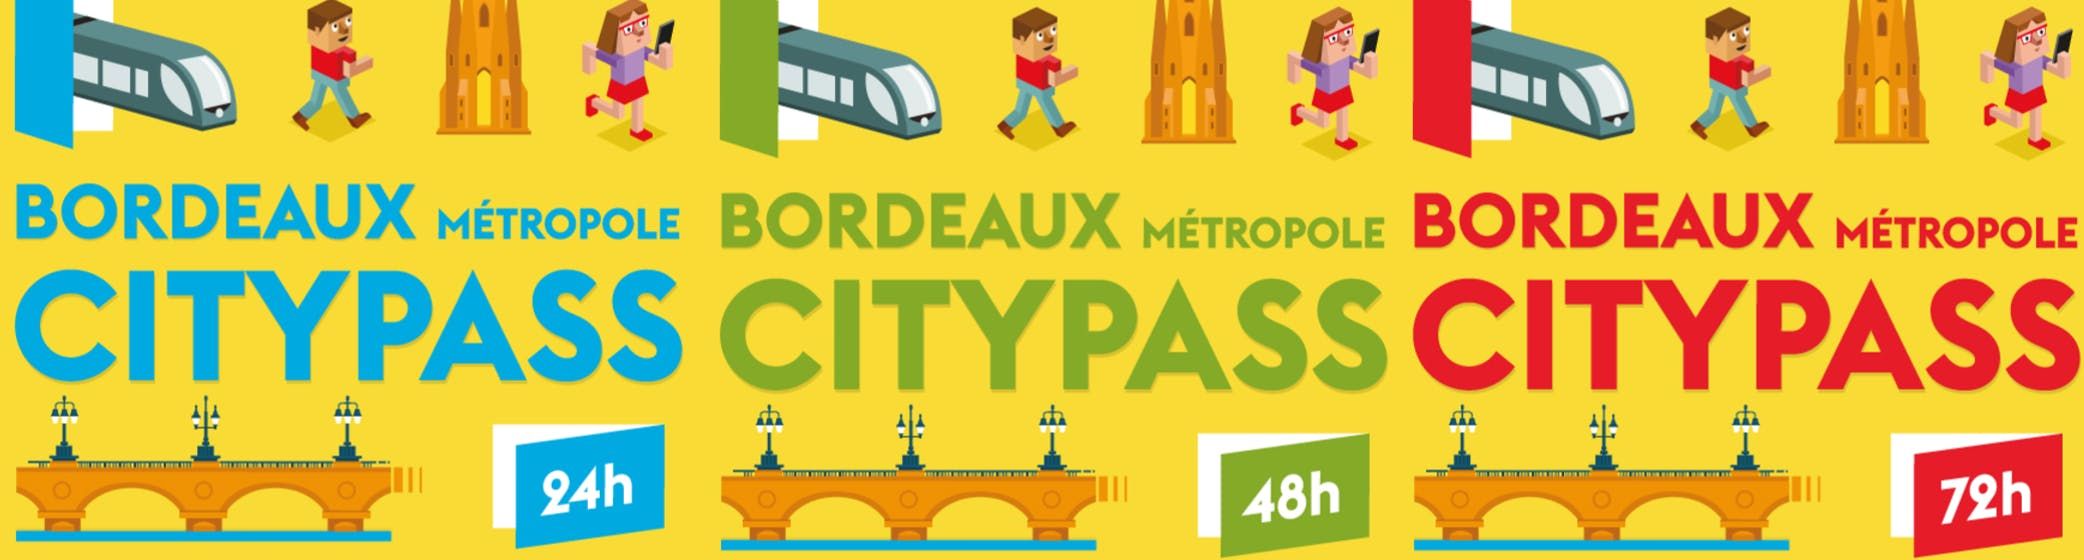 Imagen del tour: Tarjeta turística Bordeaux City Pass para 24 h, 48 h o 72 h